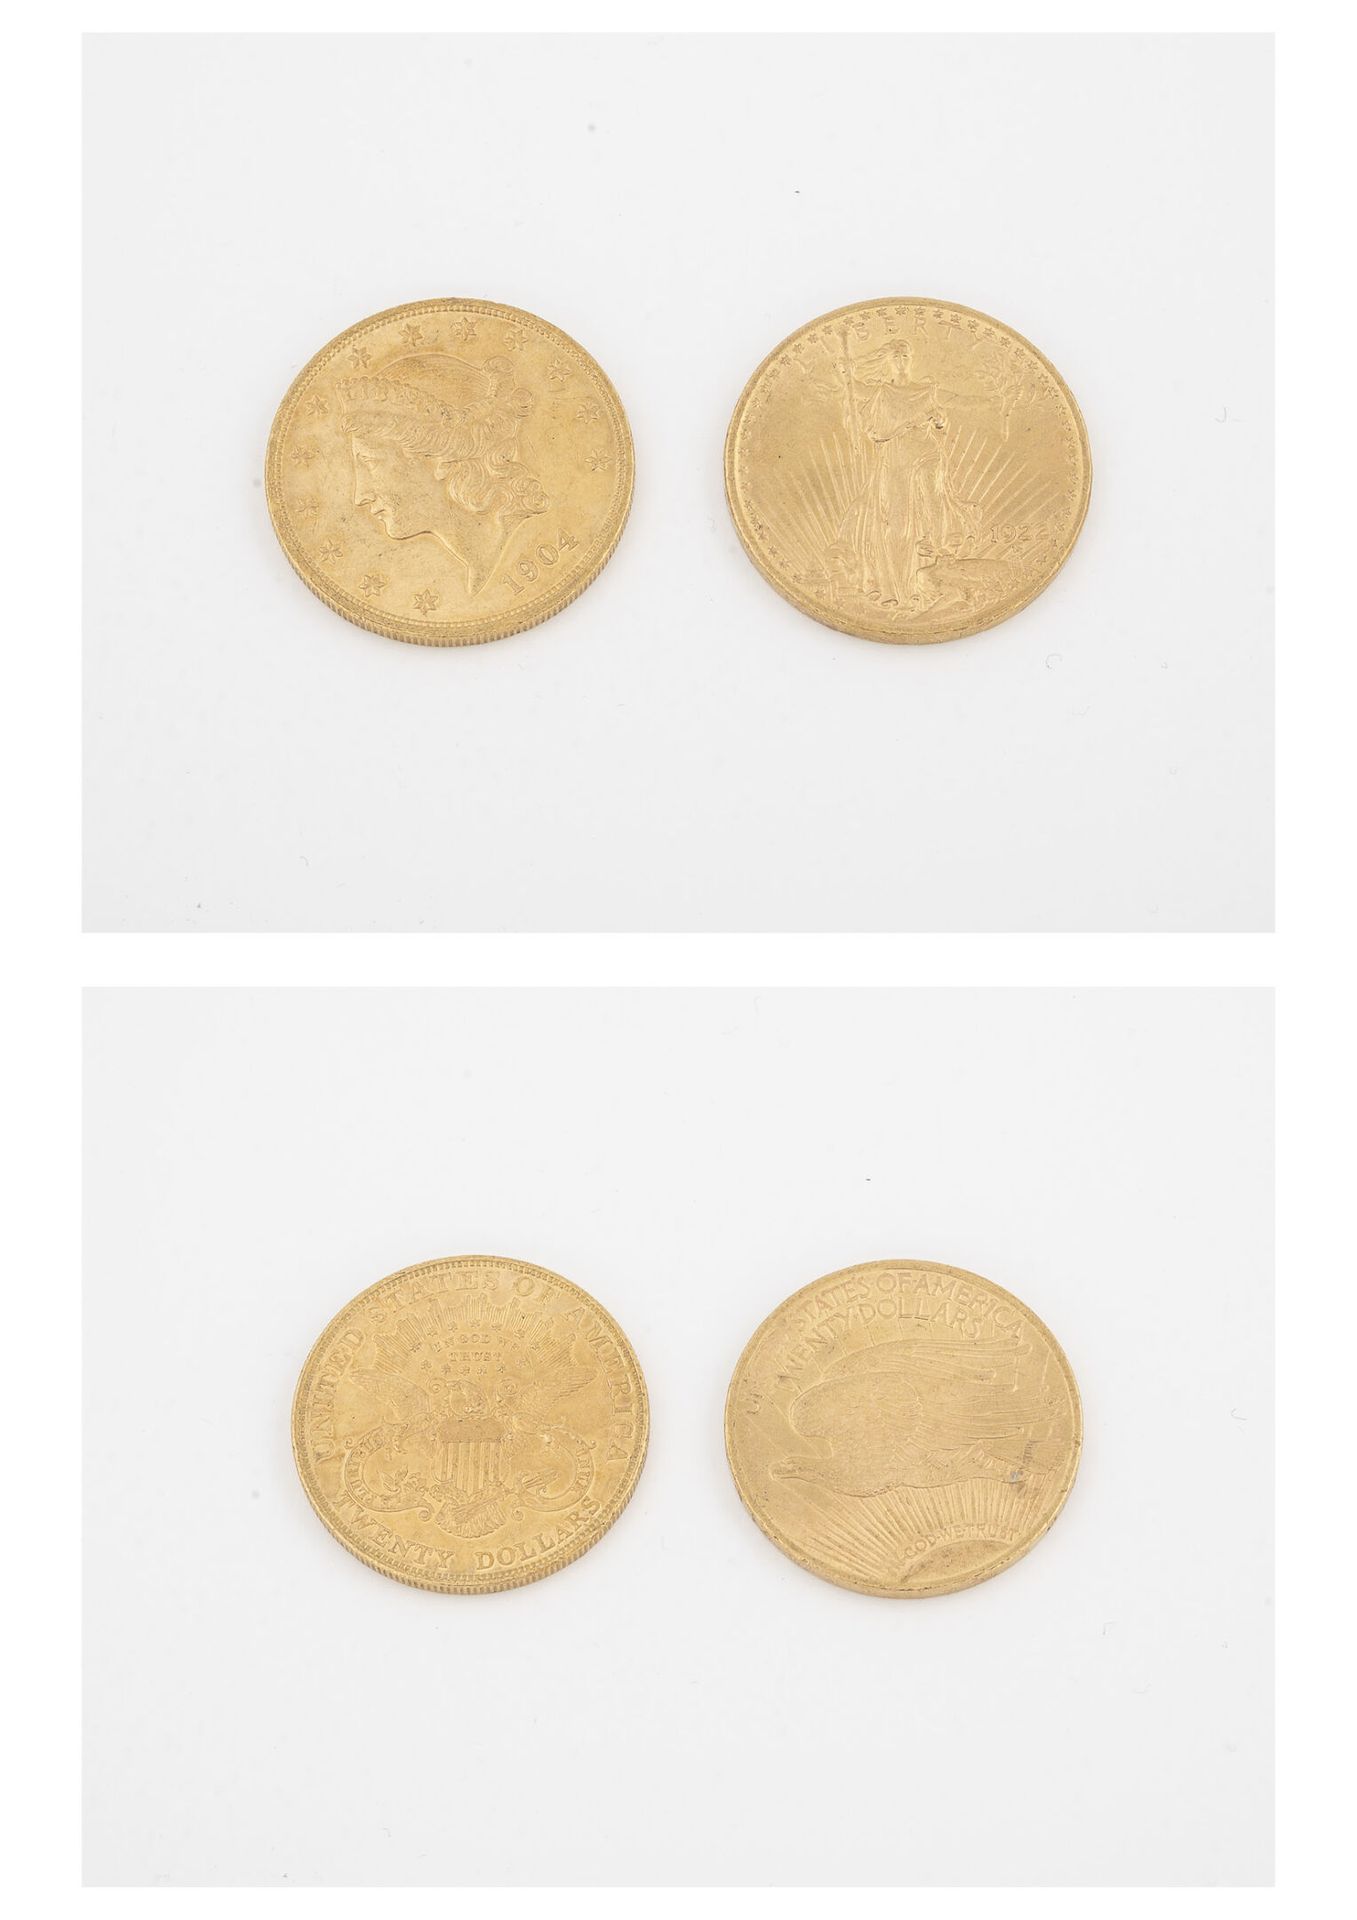 ÉTATS UNIS 两枚20美元金币，1904年和1922年。

总重量：66.8克。

划痕和磨损。